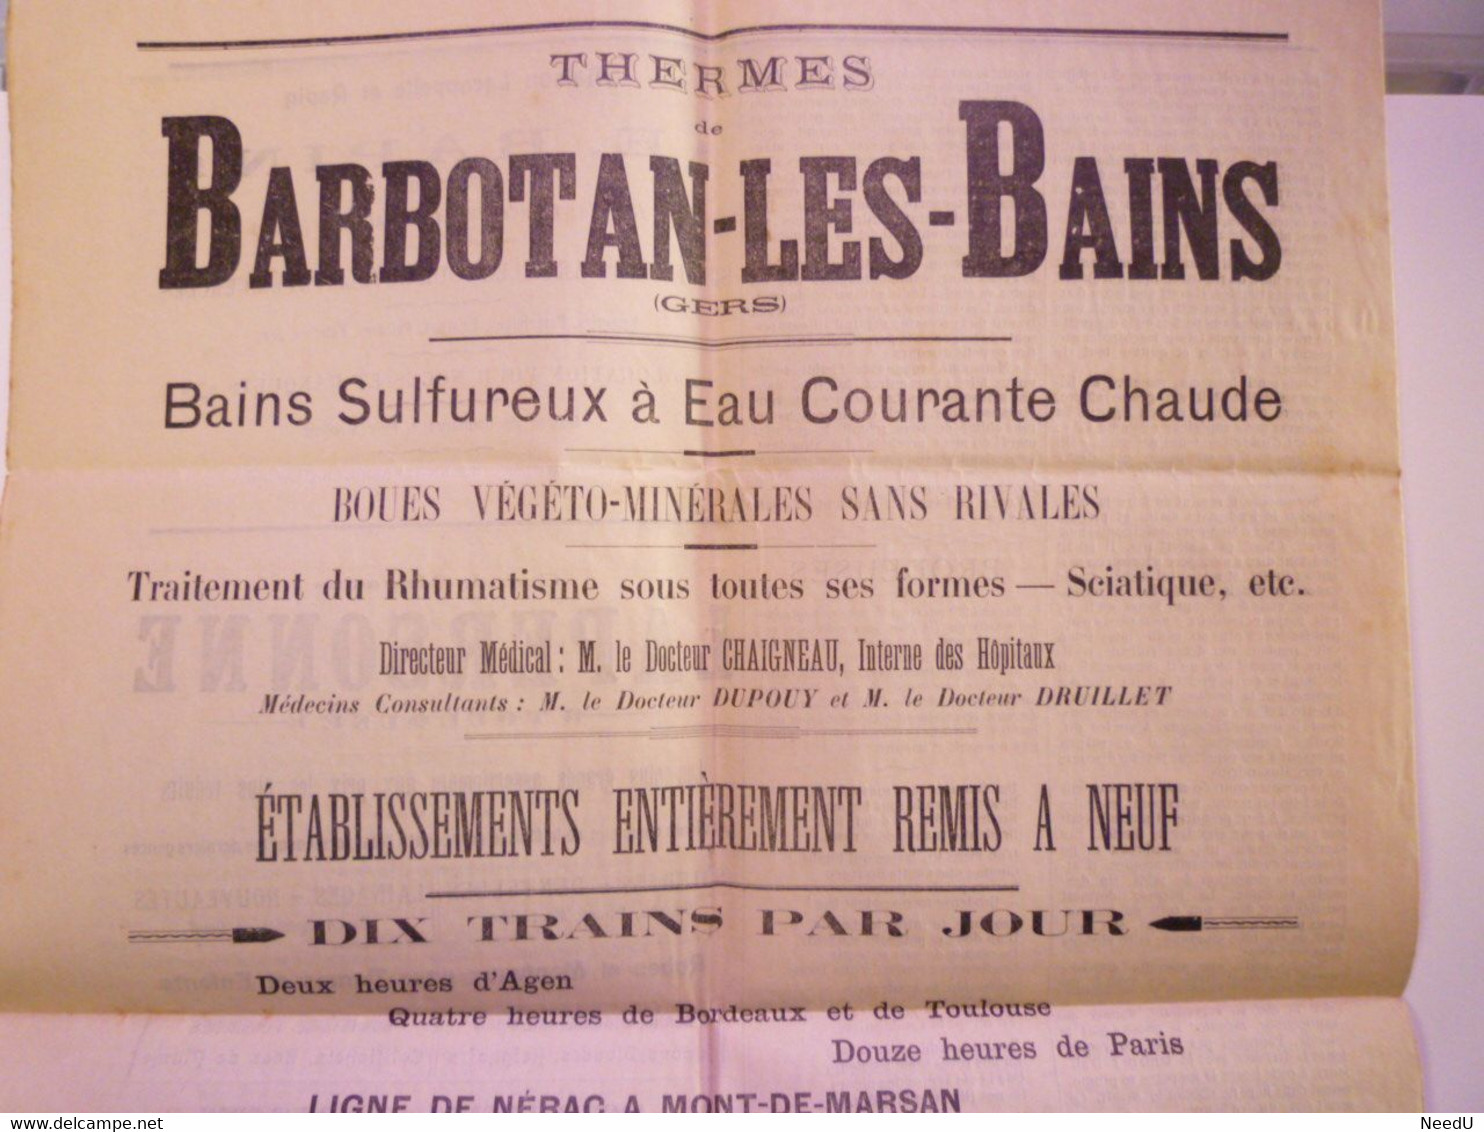 GP 2021 - 82  Journal  "L'ECHO De Barbotan-les-Bains Et De L'ARMAGNAC"  1906  (4 Pages)   XXX - Non Classificati